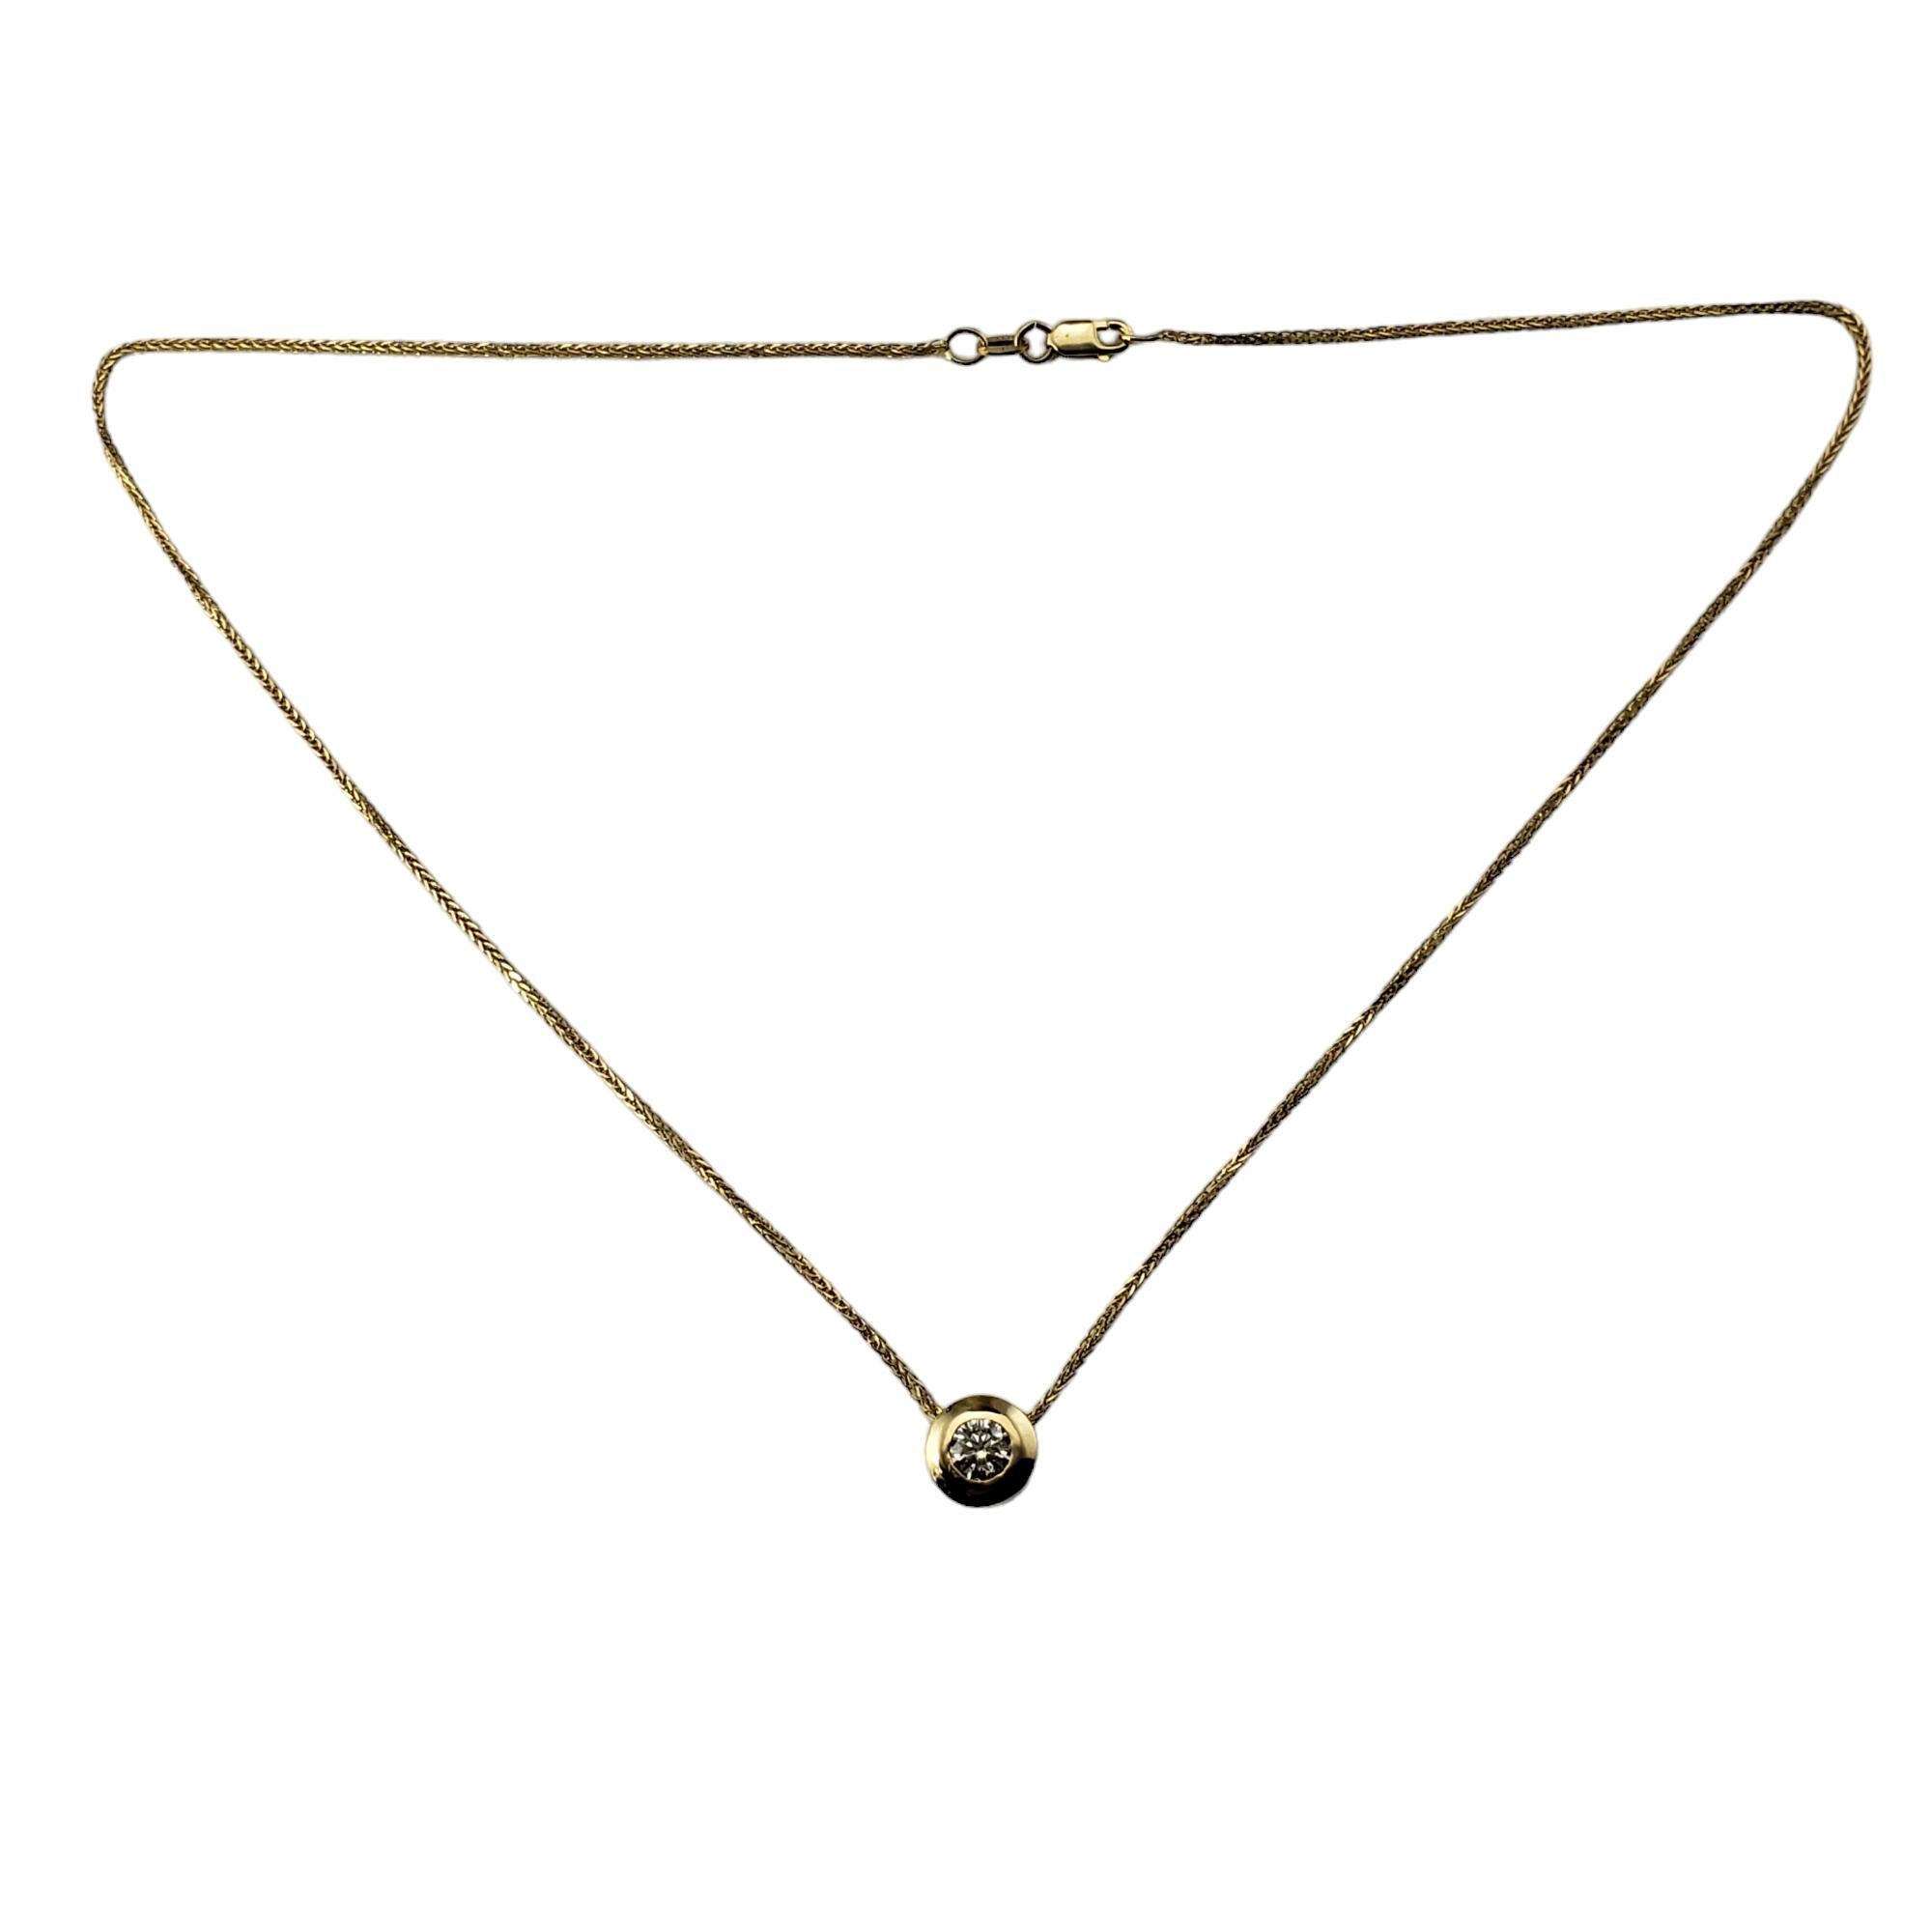 Vintage 14K Gelbgold Diamond Solitaire Anhänger Halskette-

Dieser funkelnde Anhänger ist mit einem runden Diamanten im Brillantschliff in klassischem 14-karätigem Gelbgold gefasst. 

Ungefähres Gesamtgewicht der Diamanten: 45 ct.

Farbe des